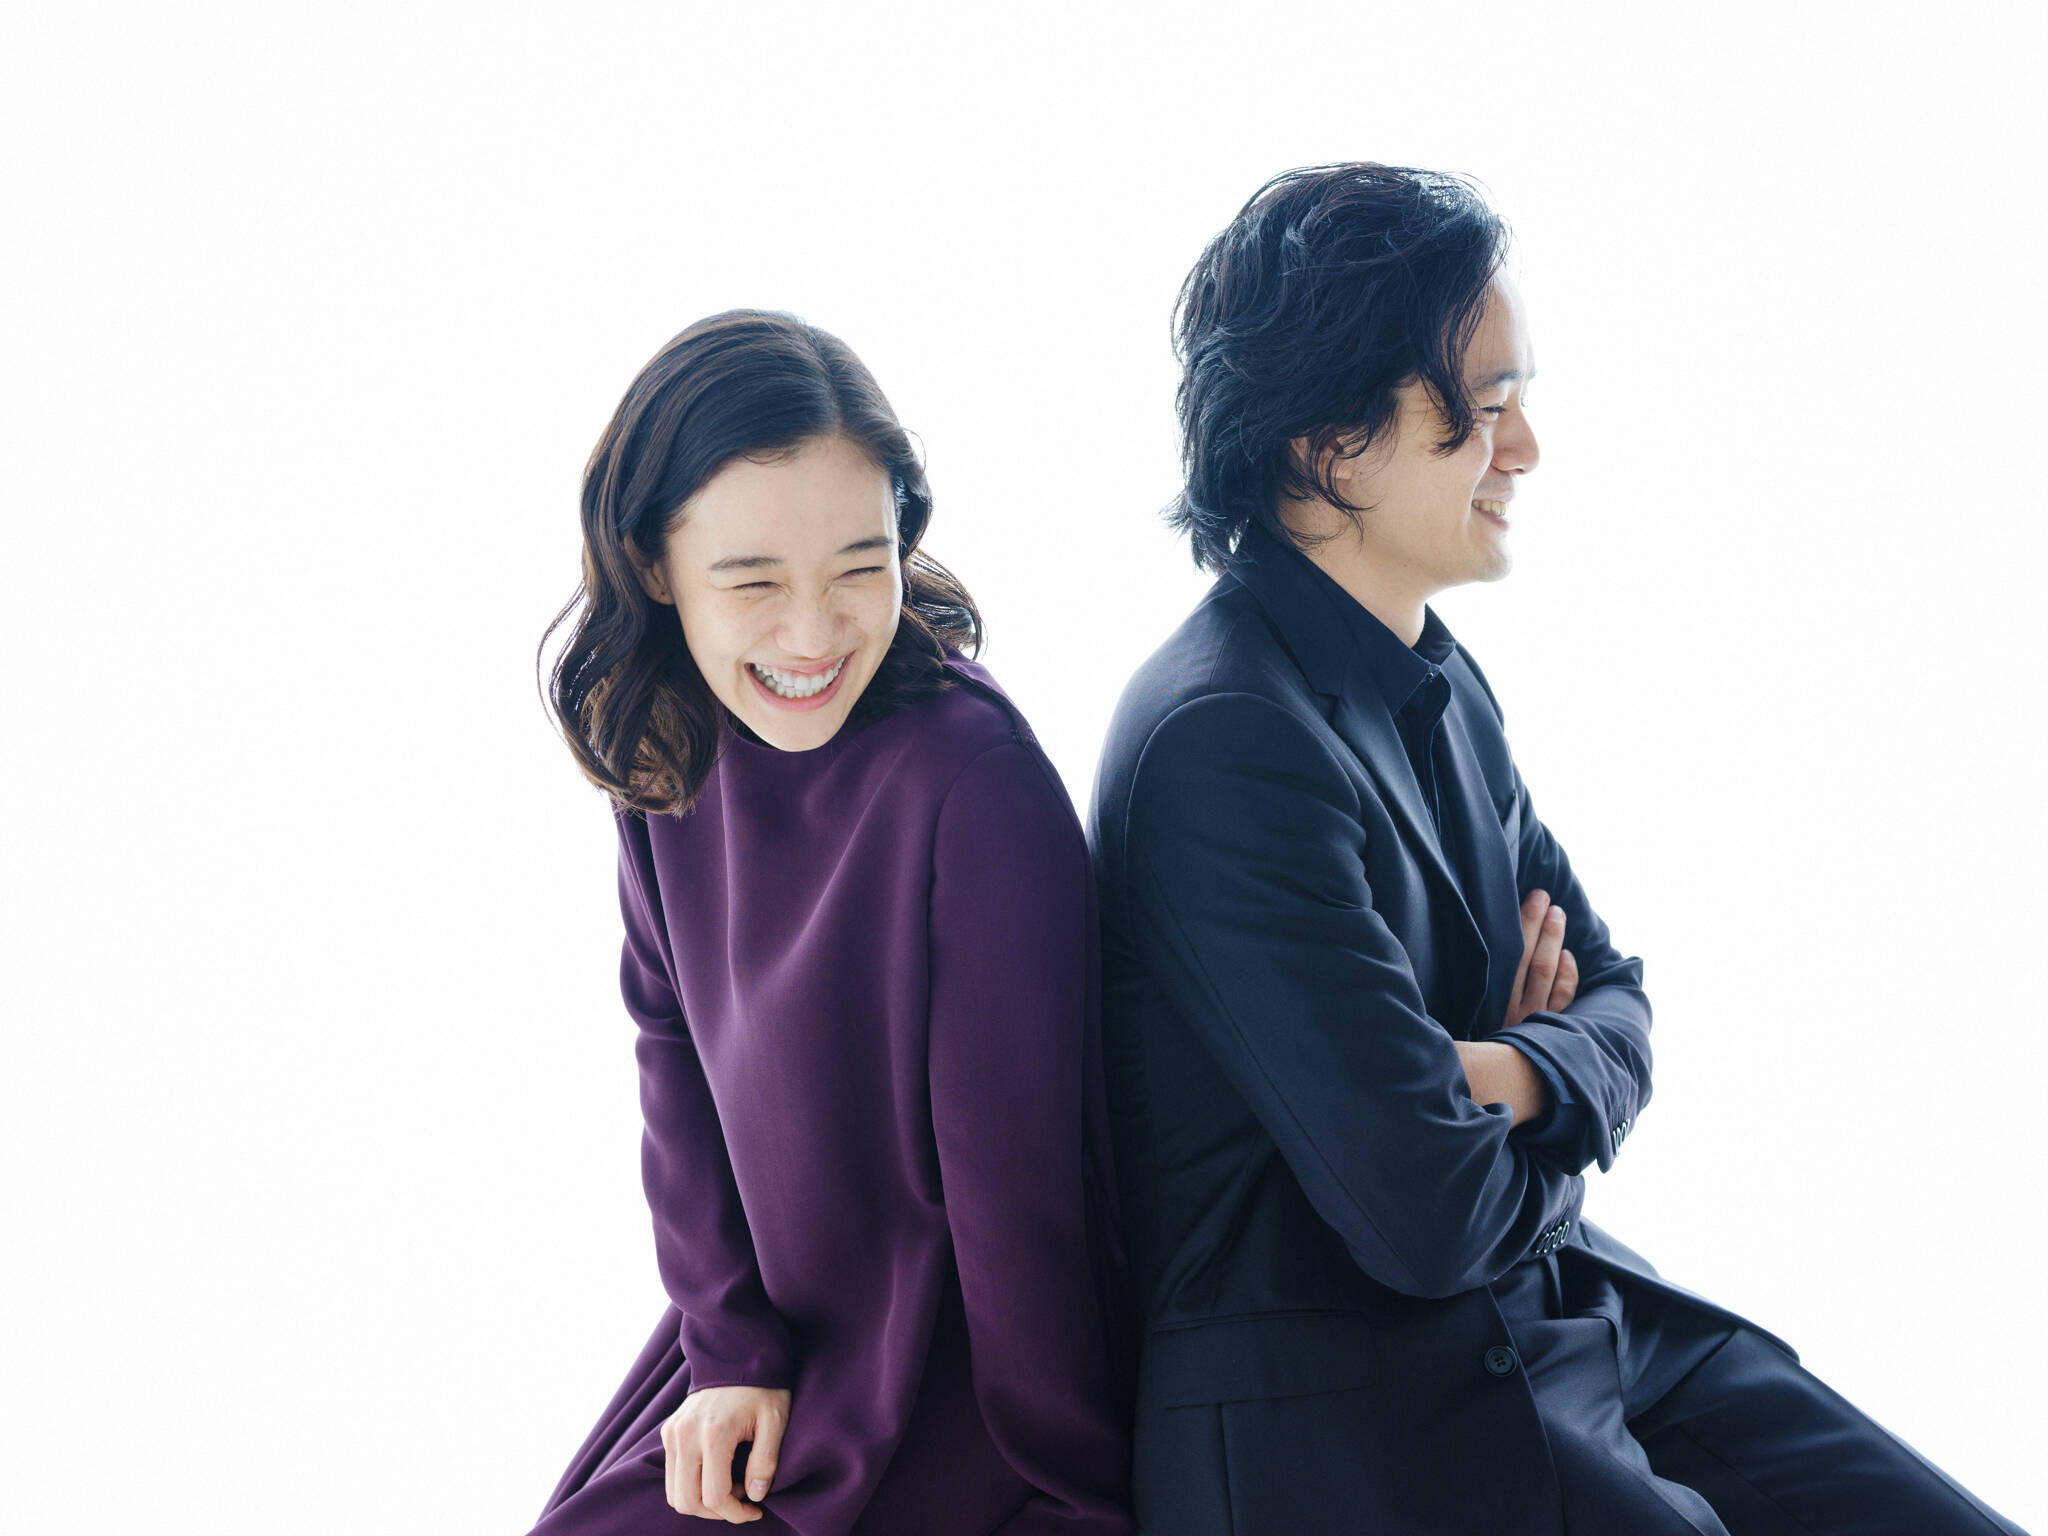 池松壮亮 蒼井優で贈る 日本一嫌われた男のラブストーリー 2019年9月26日 エキサイトニュース 3 5